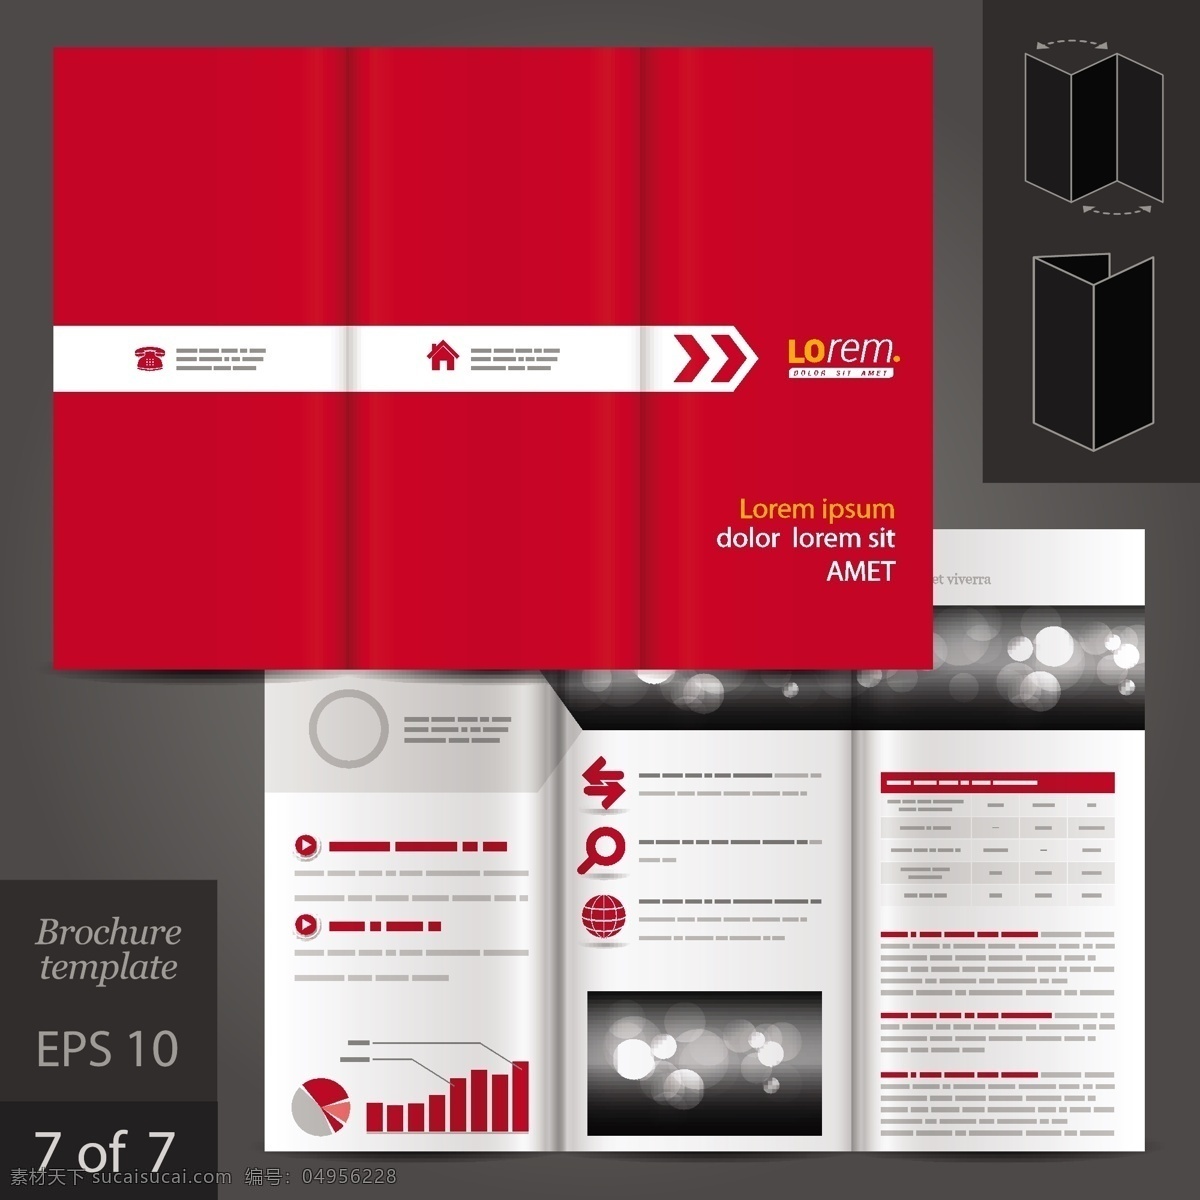 红色 大气 宣传册 页面 排版 合集 矢量 素 矢量素材 设计素材 背景素材